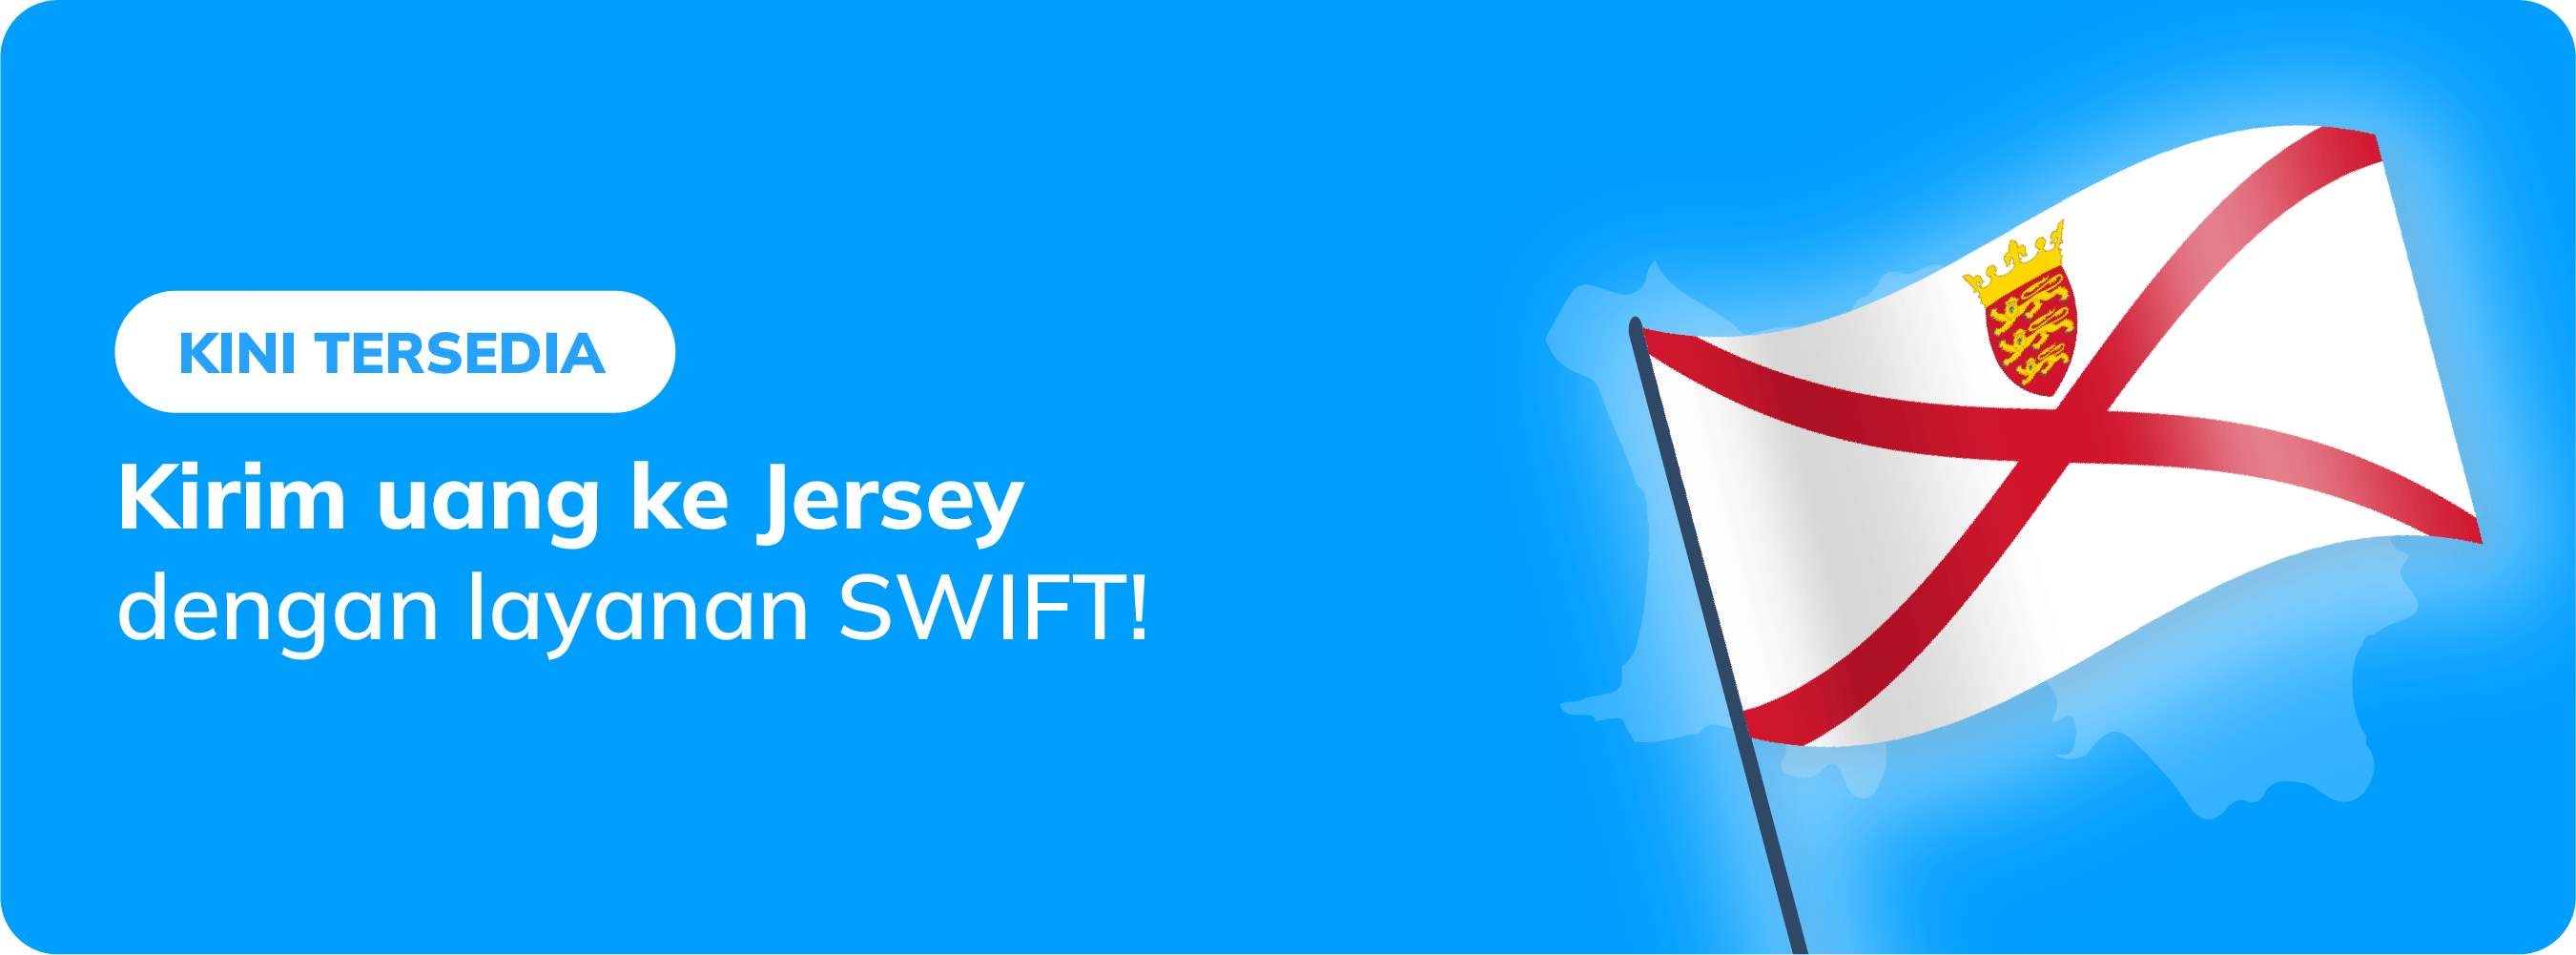 kirim uang ke Jersey via SWIFT